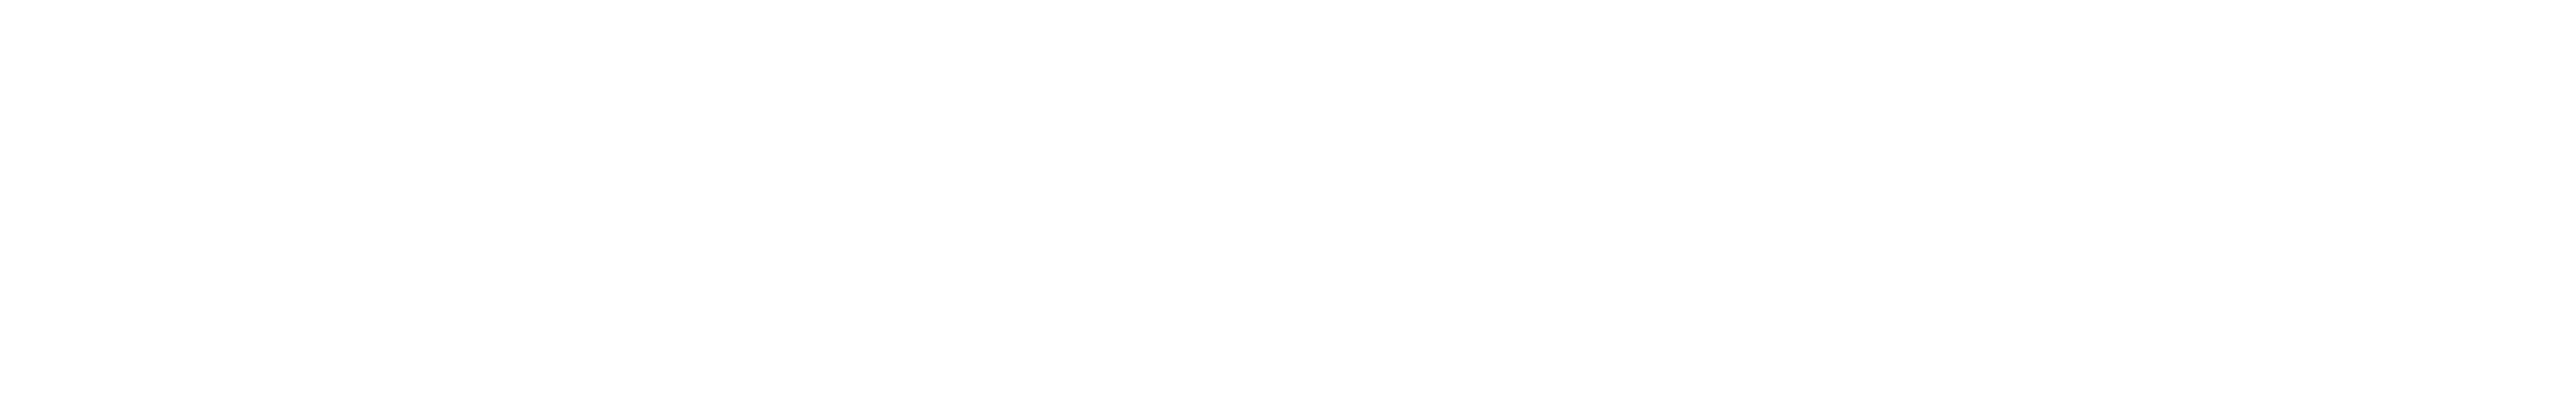 digicampus-logo3-1